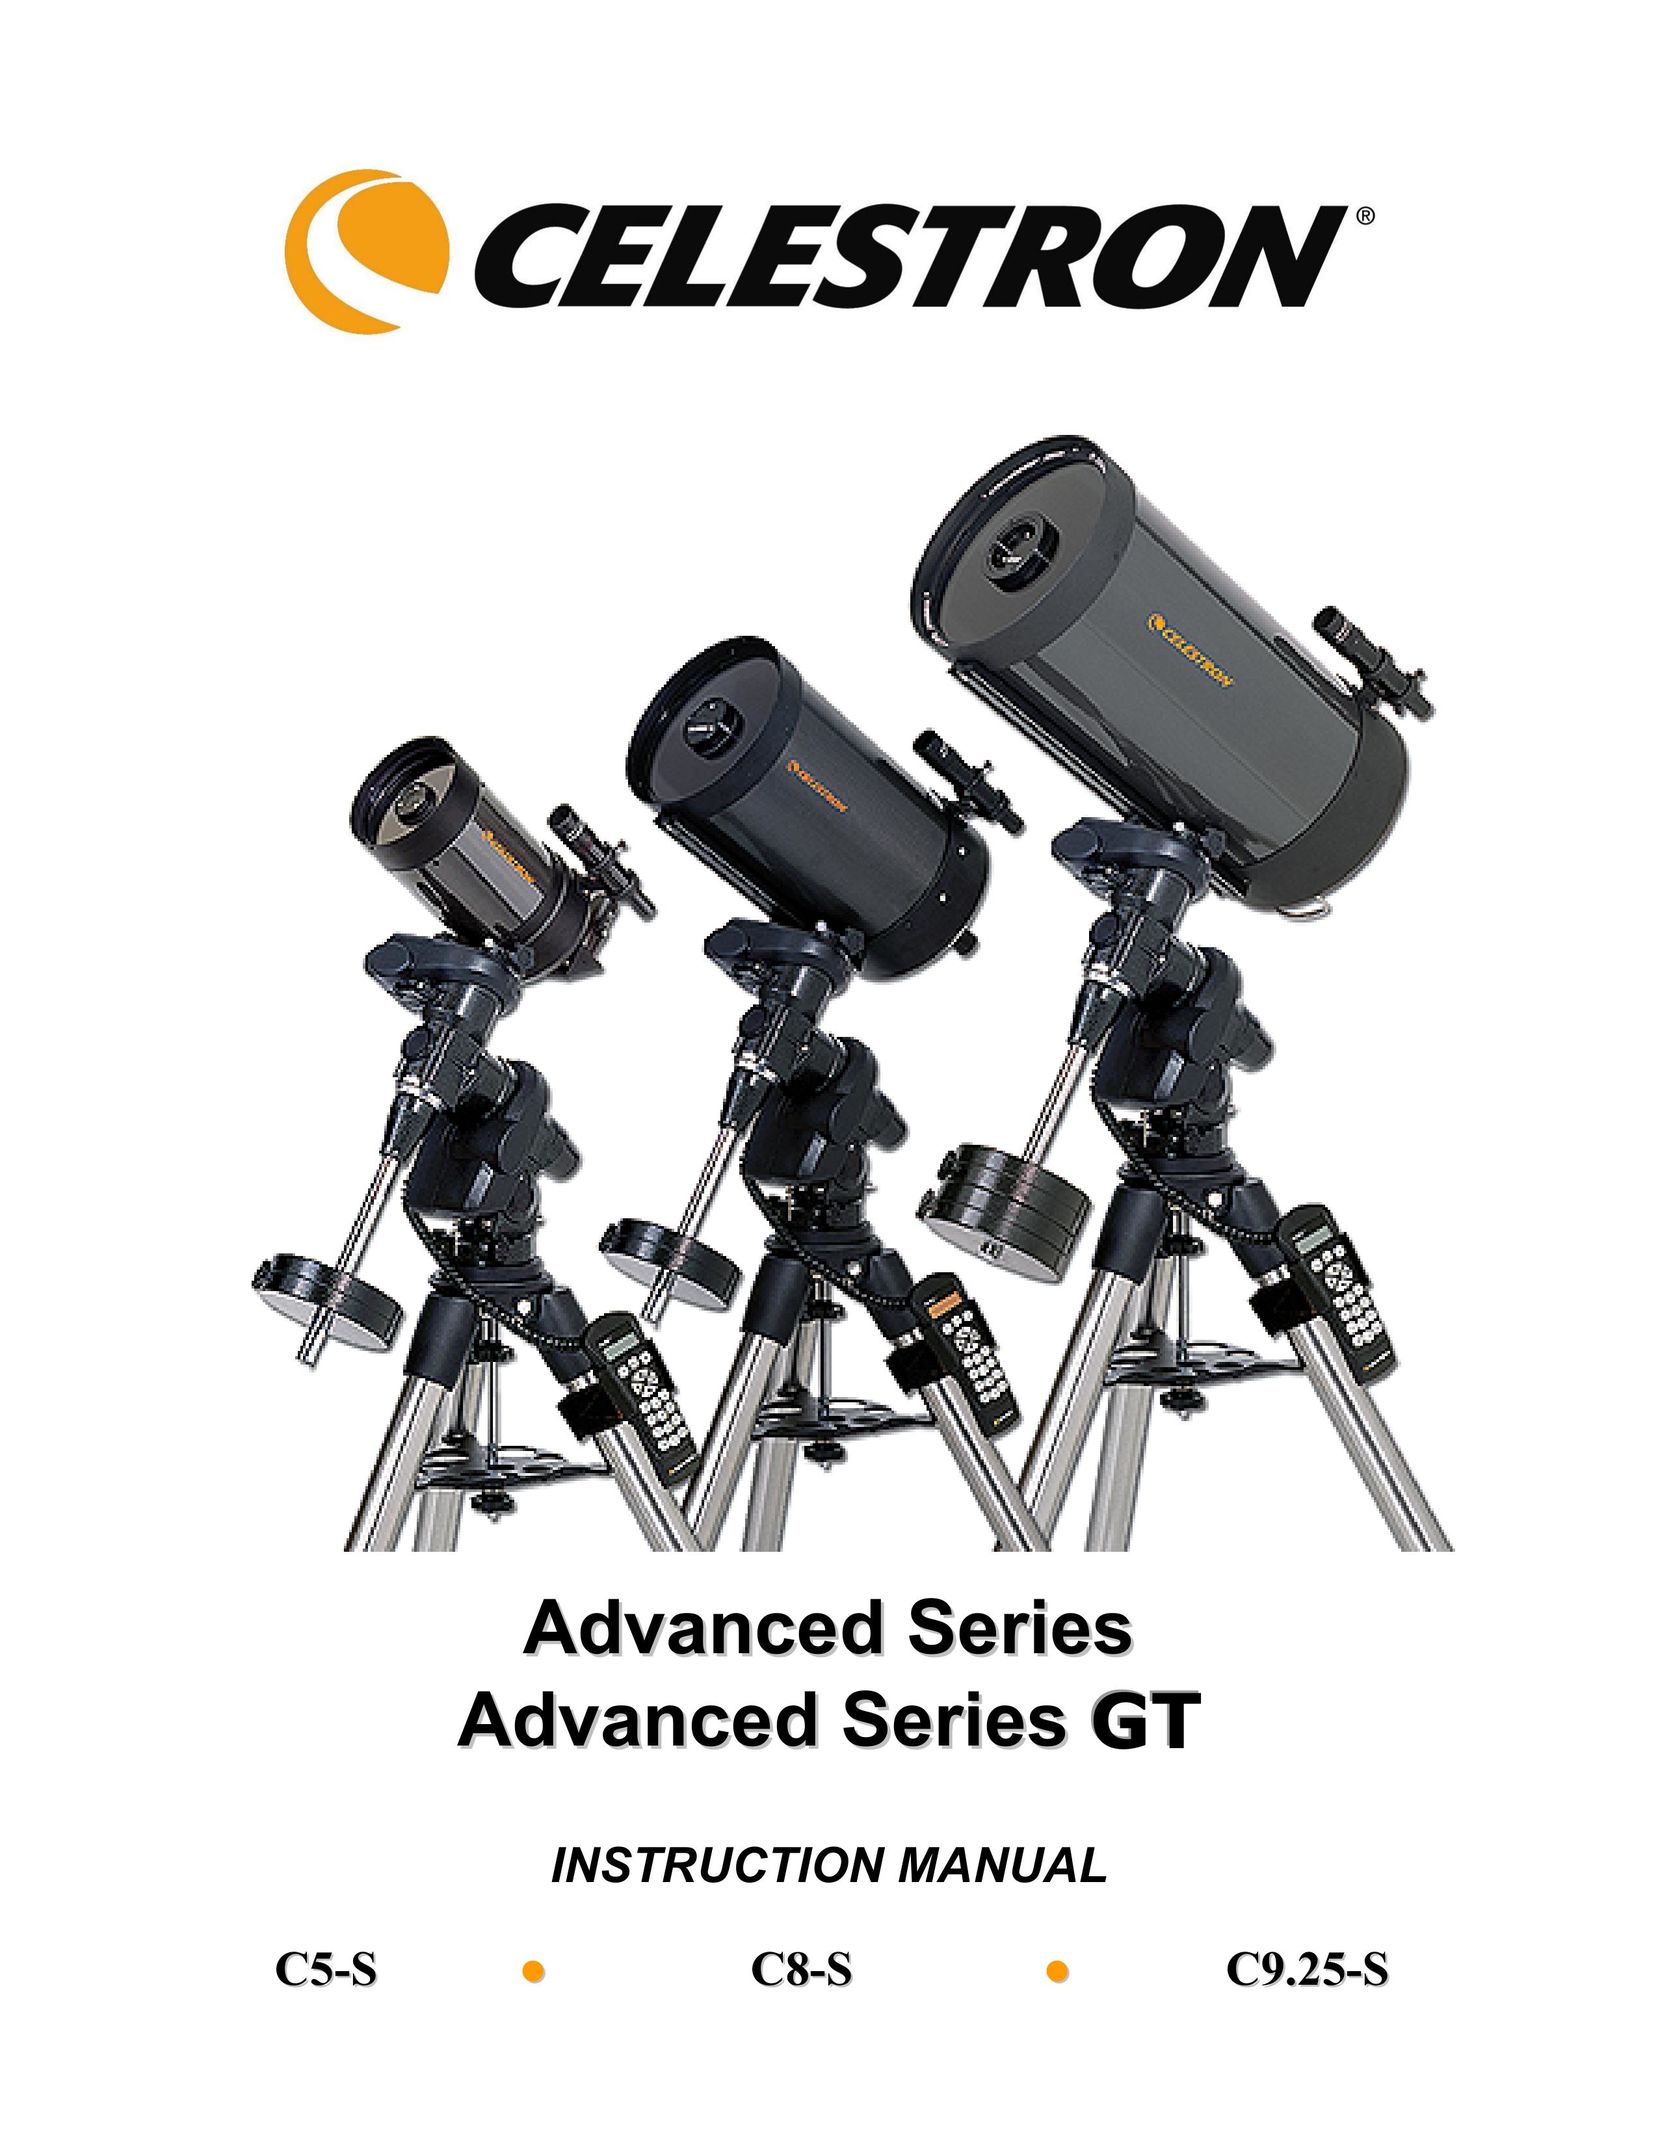 Celestron C5-S Binoculars User Manual